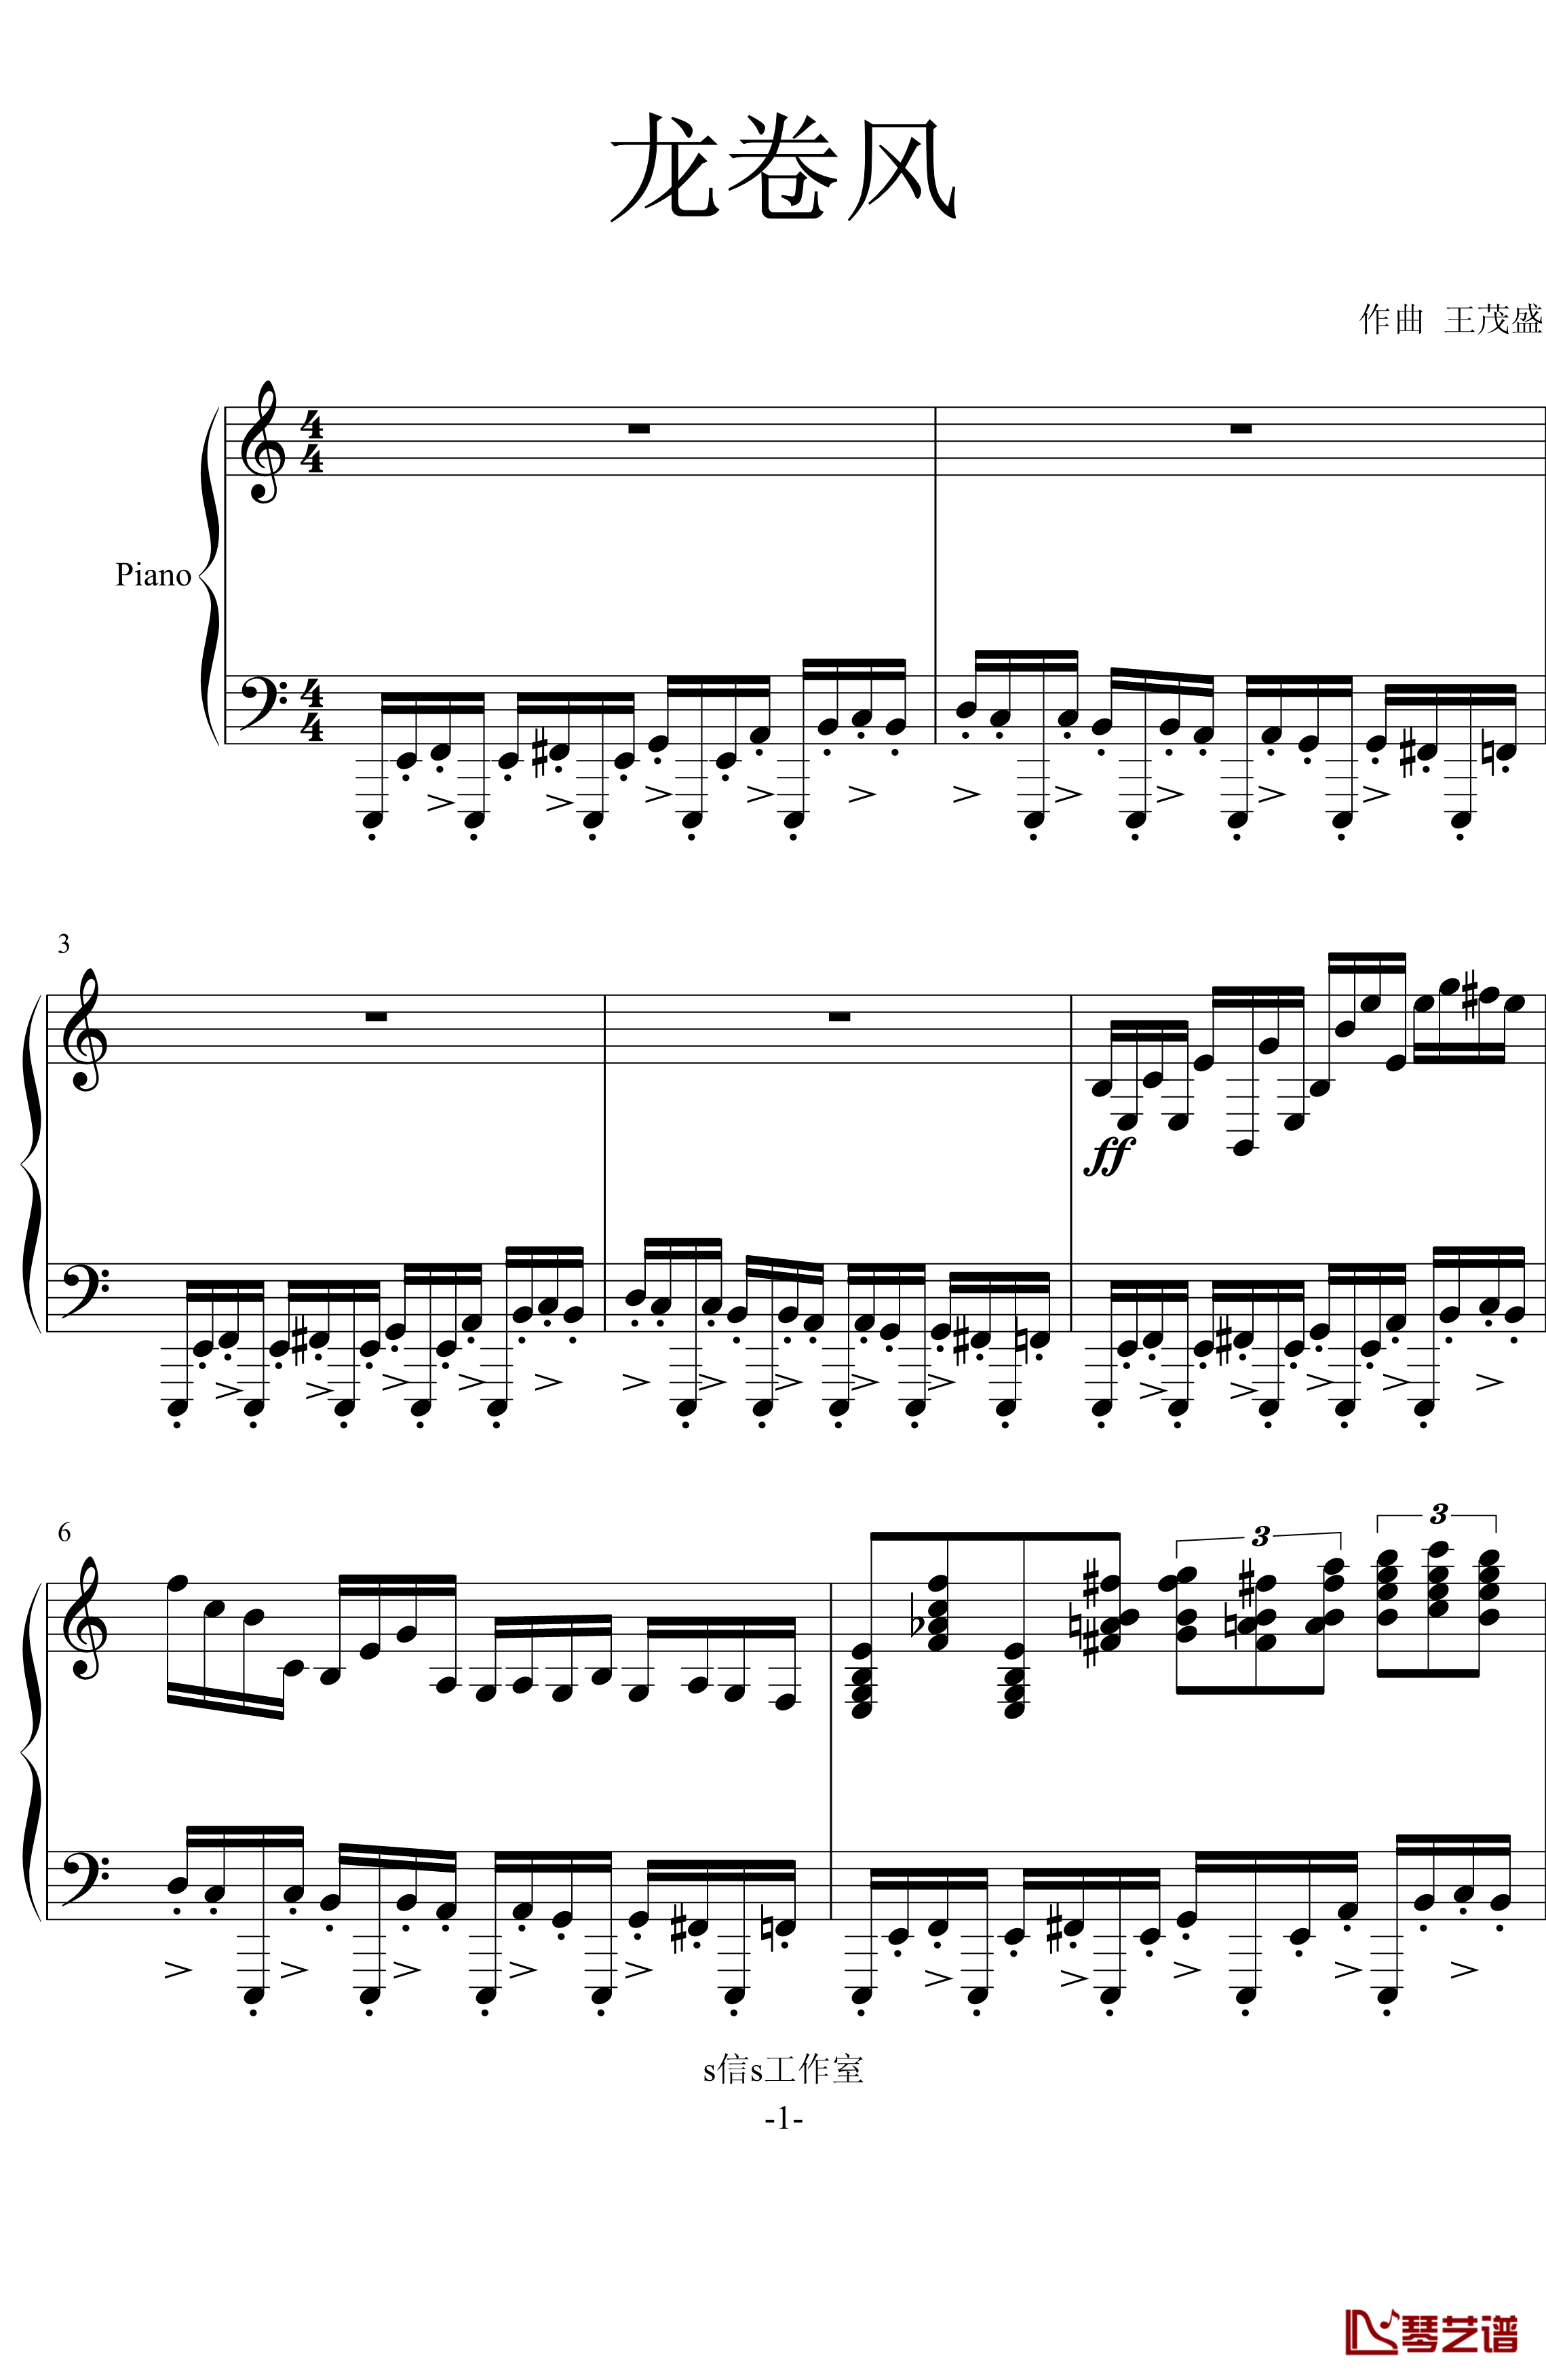 龙卷风钢琴谱-超级练习曲-wang5549034411